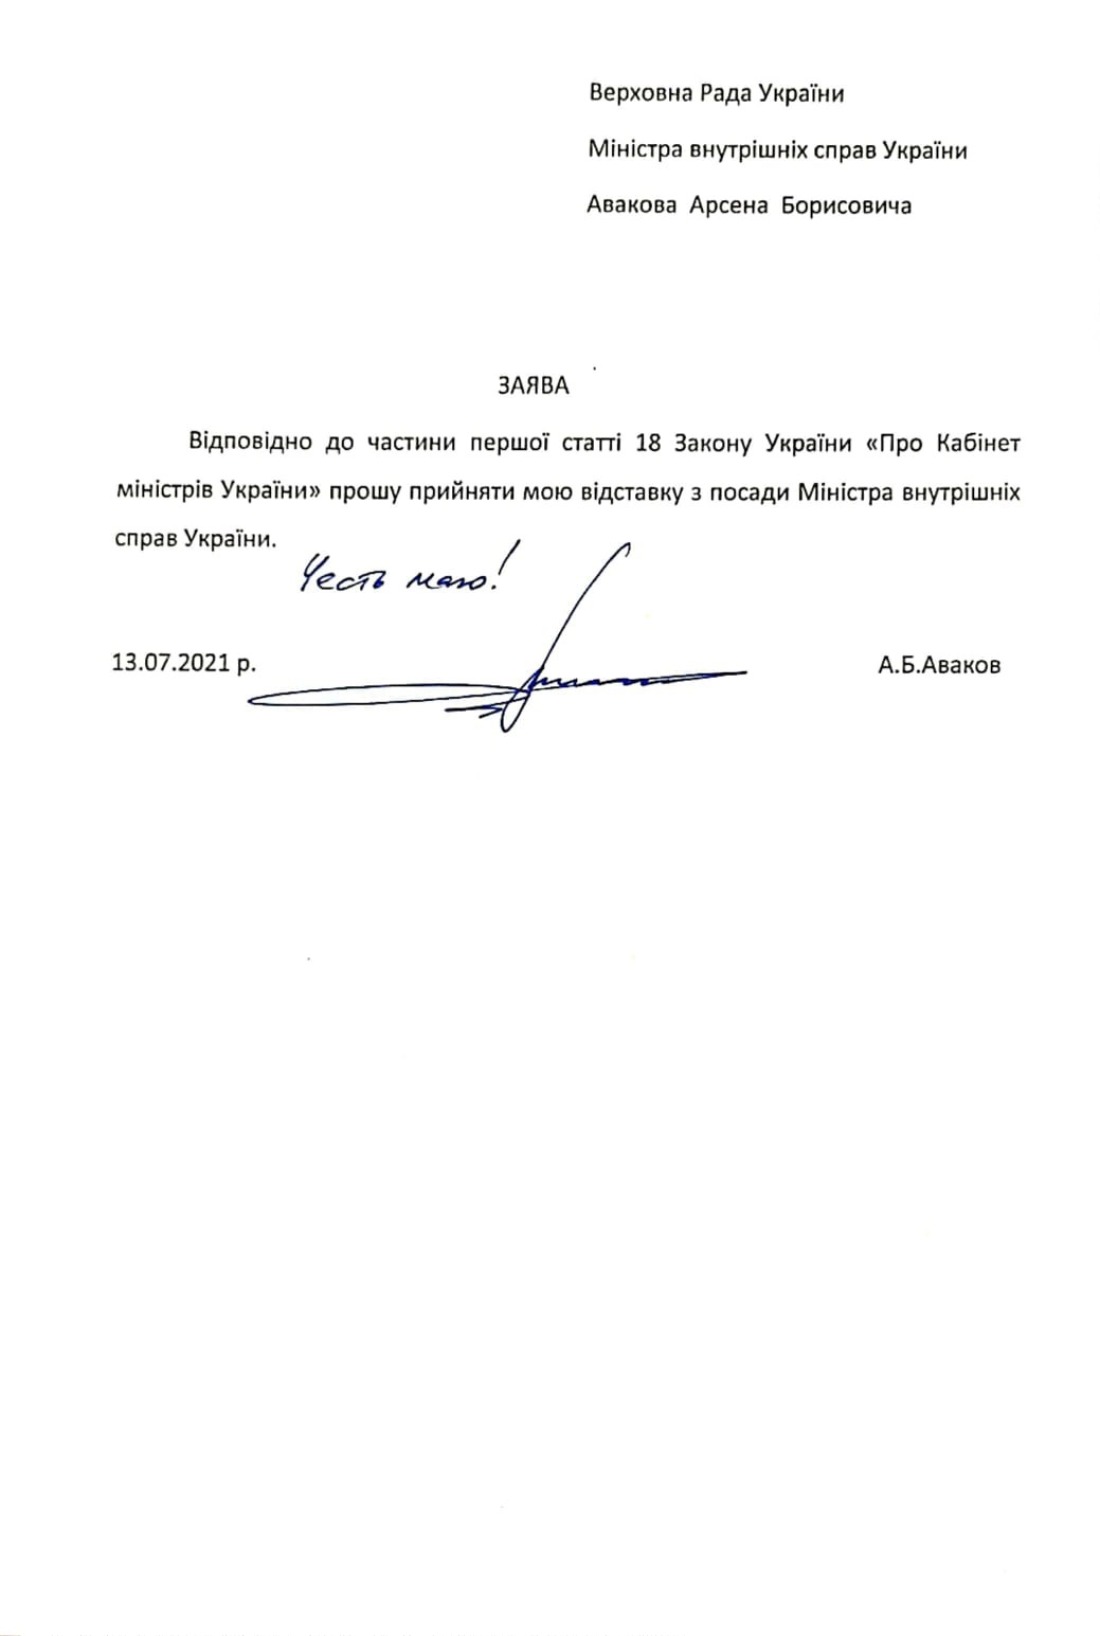 Аваков подтвердил свою отставку